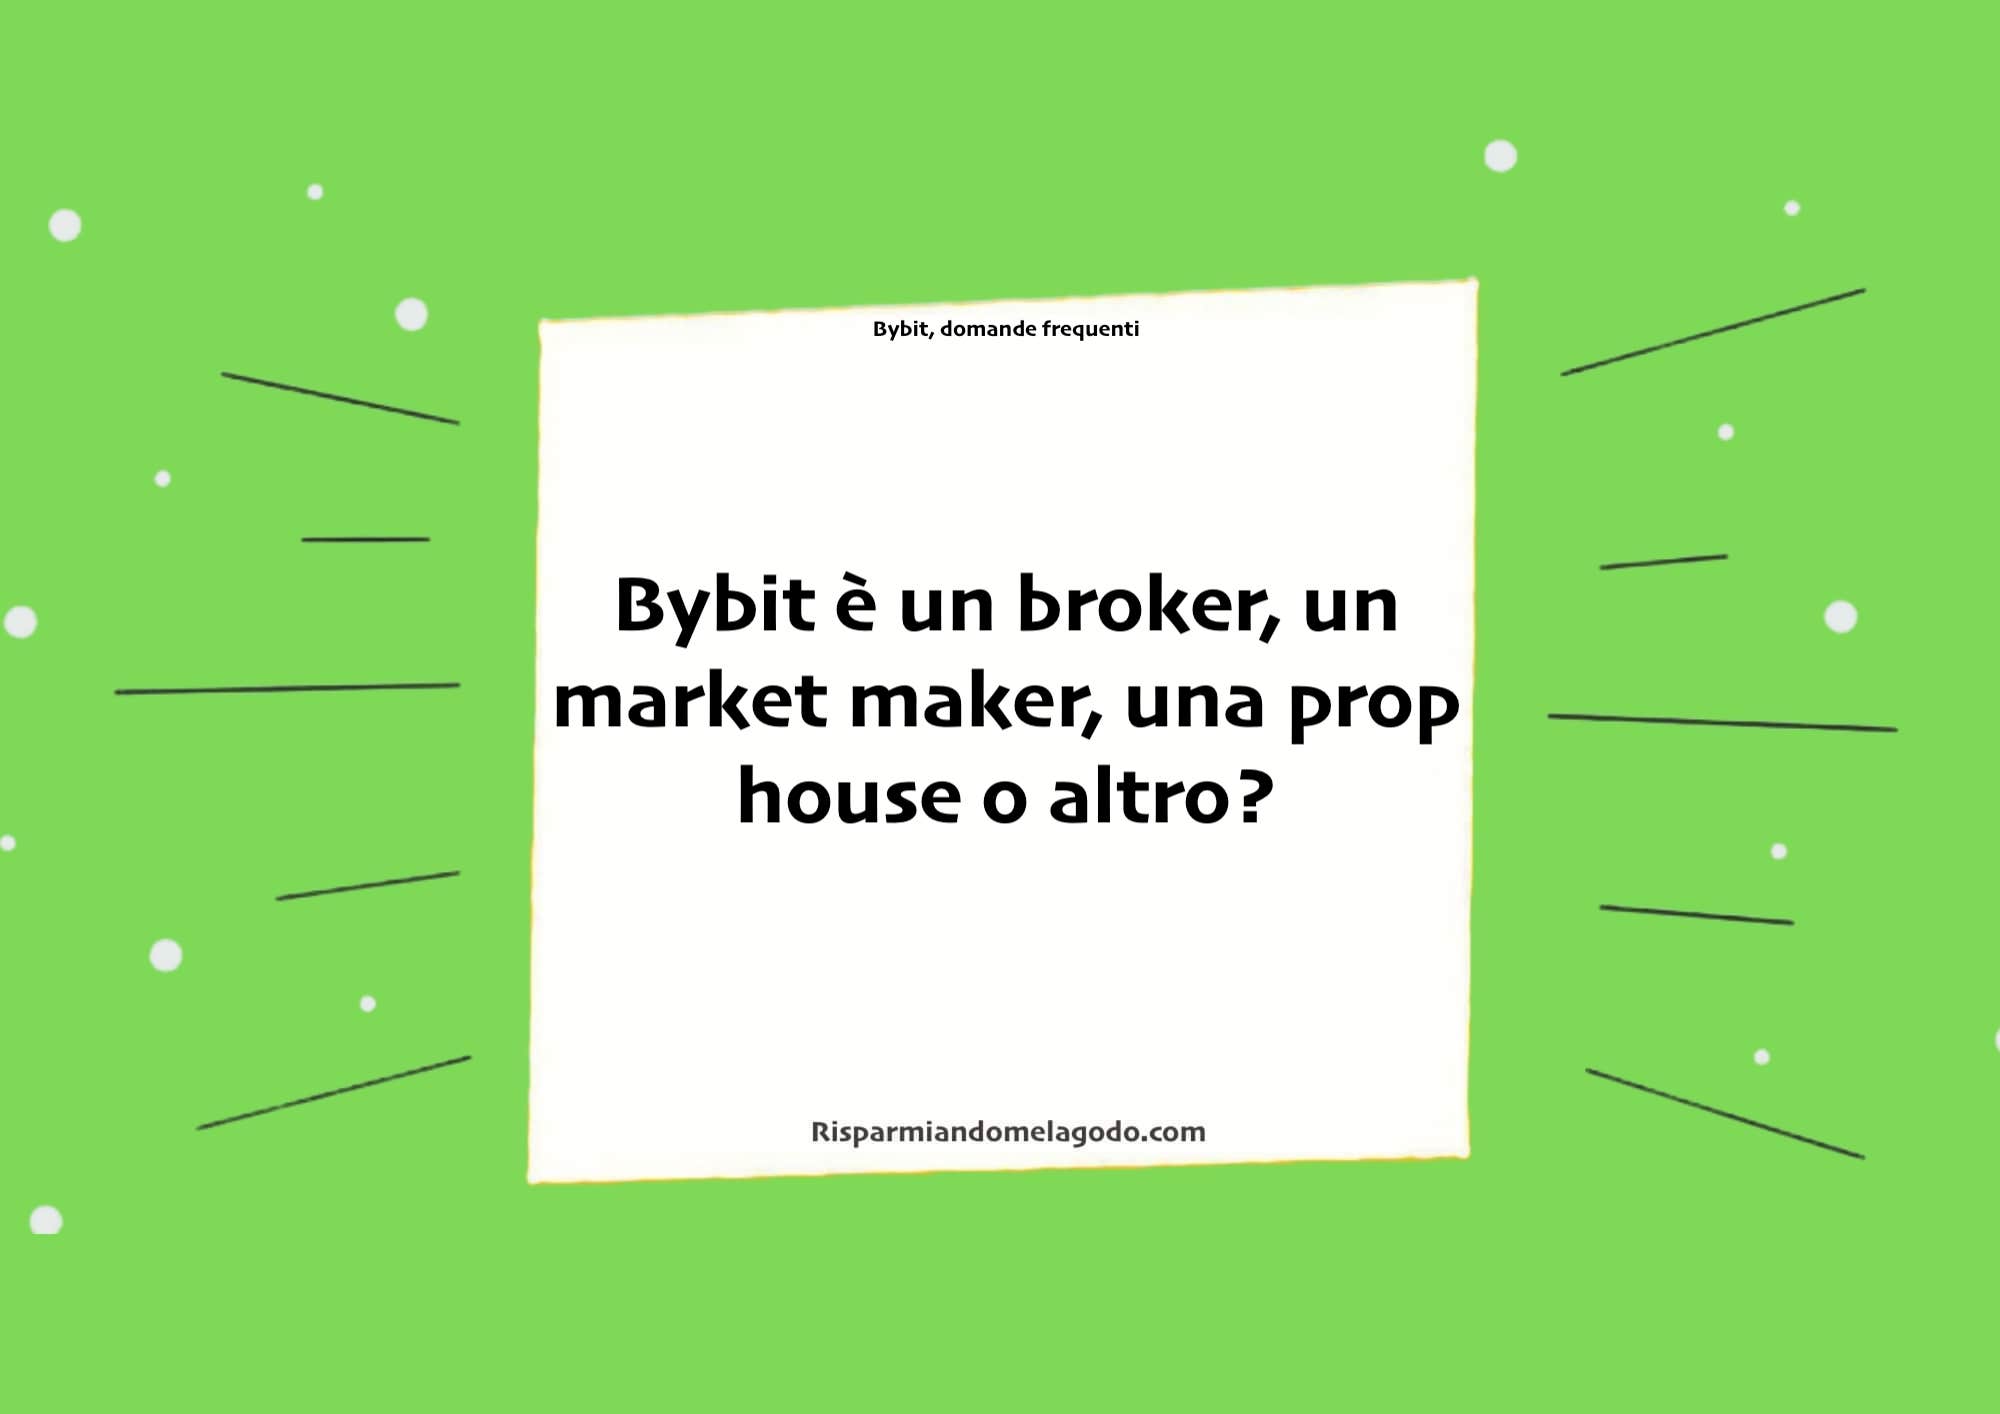 Bybit è un broker, un market maker, una prop house o altro?